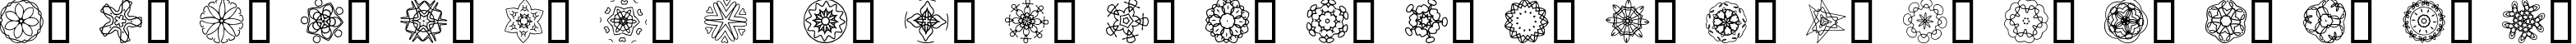 Пример написания английского алфавита шрифтом JI Kaleidoscope Bats 5